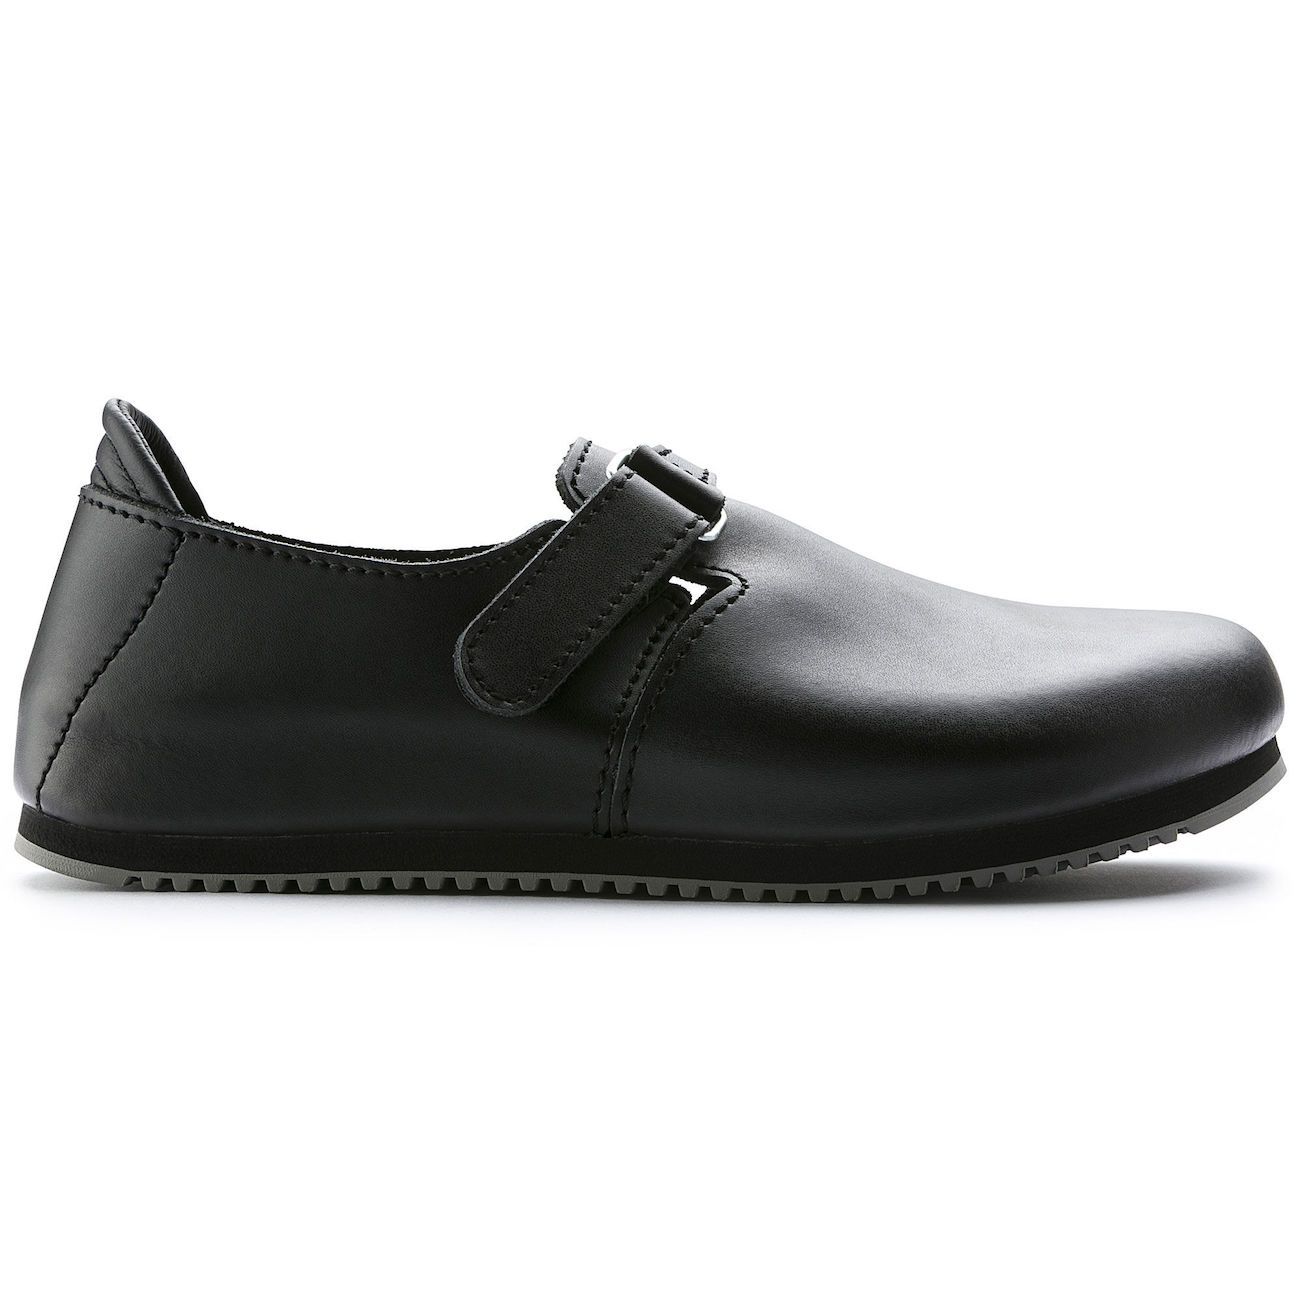 Birkenstock Professional, Linz SL, Super Grip Sole Leather Regular Fit, Black Shoes Birkenstock Professional Black 42 